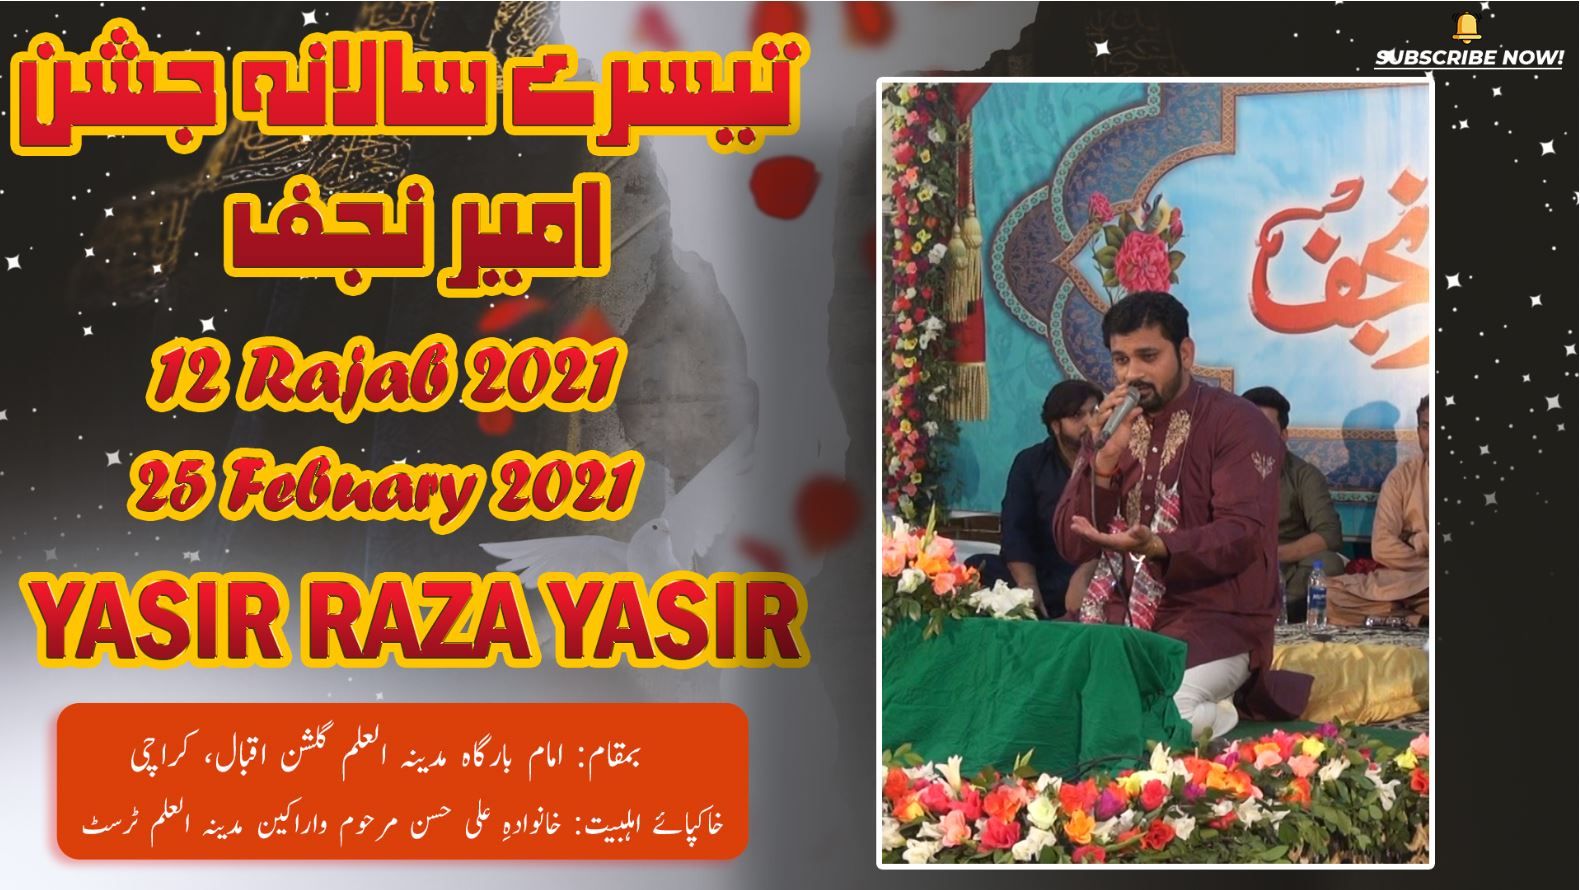 Manqabat | Yasir Raza Yasir Jashan Ameer-e-Najaf 12 Rajab 2021 - Imam Bargah Madina Tul Ilm Karachi